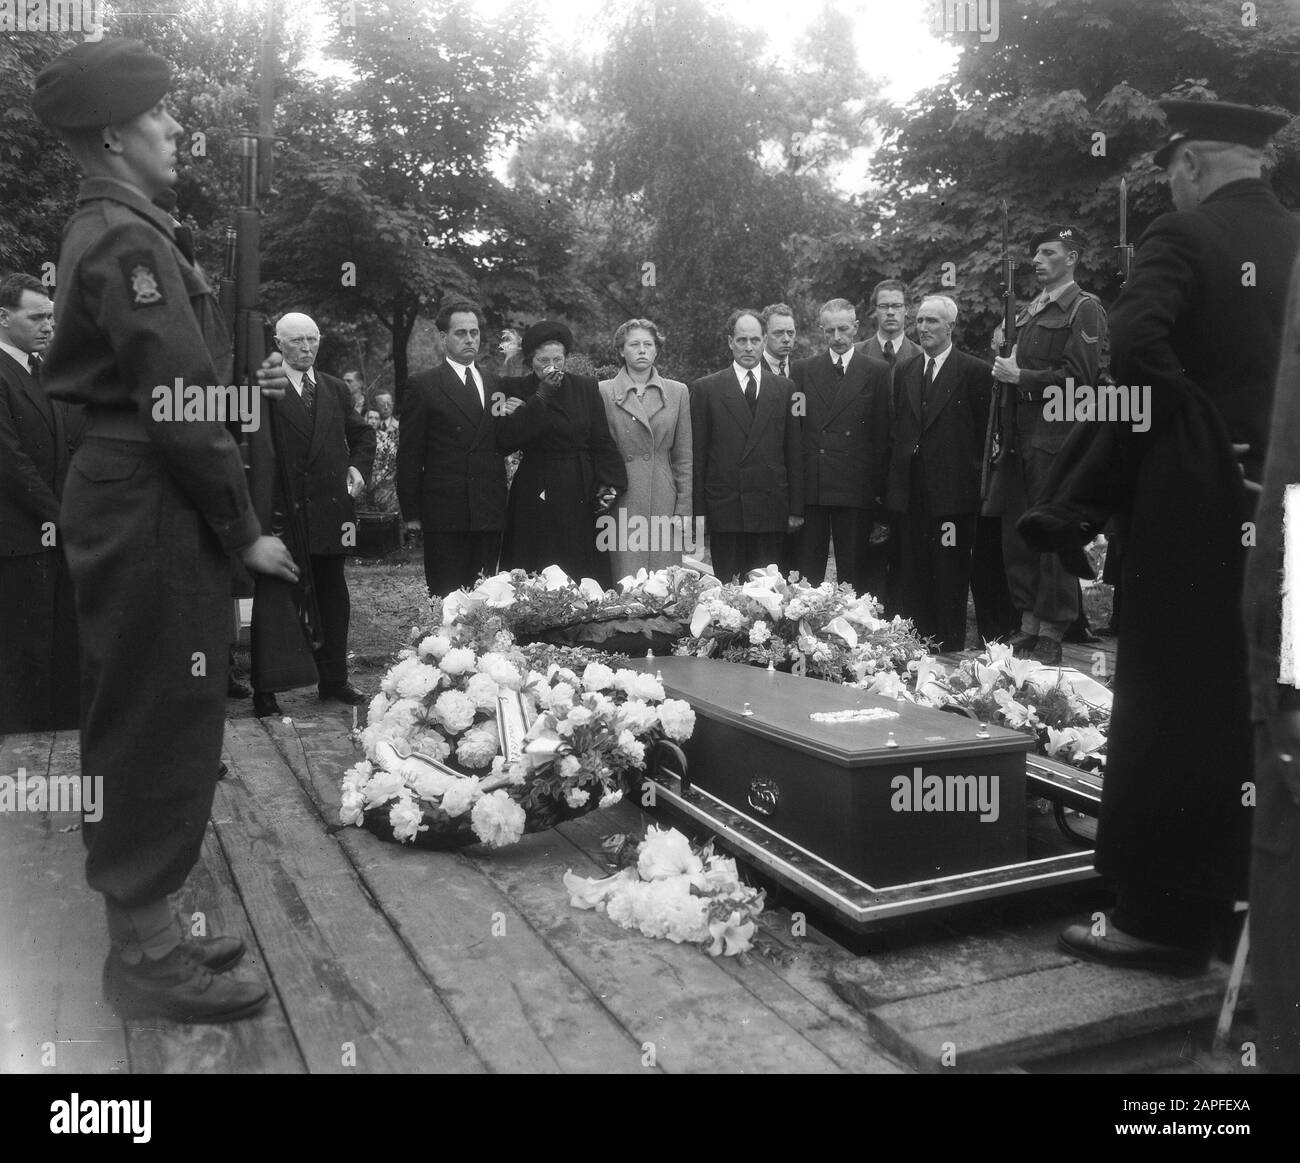 Burial Marine Eerste Klasse Van Dijk in Rotterdam Date: 23 June 1951 Location: Rotterdam, Zuid-Holland Keywords: funerals Stock Photo